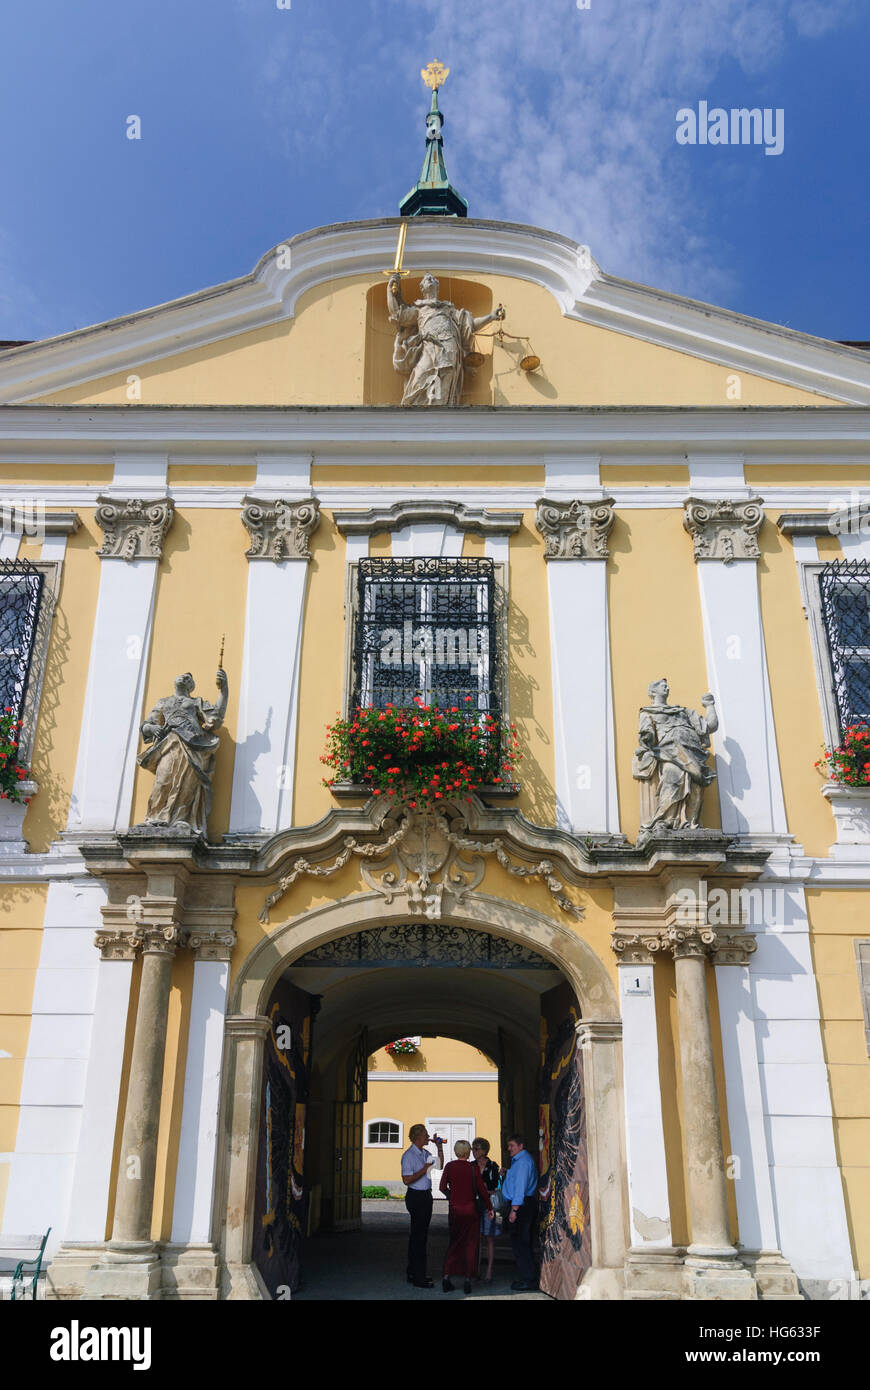 Stockerau: Town Hall, Donau, Niederösterreich, Lower Austria, Austria Stock Photo